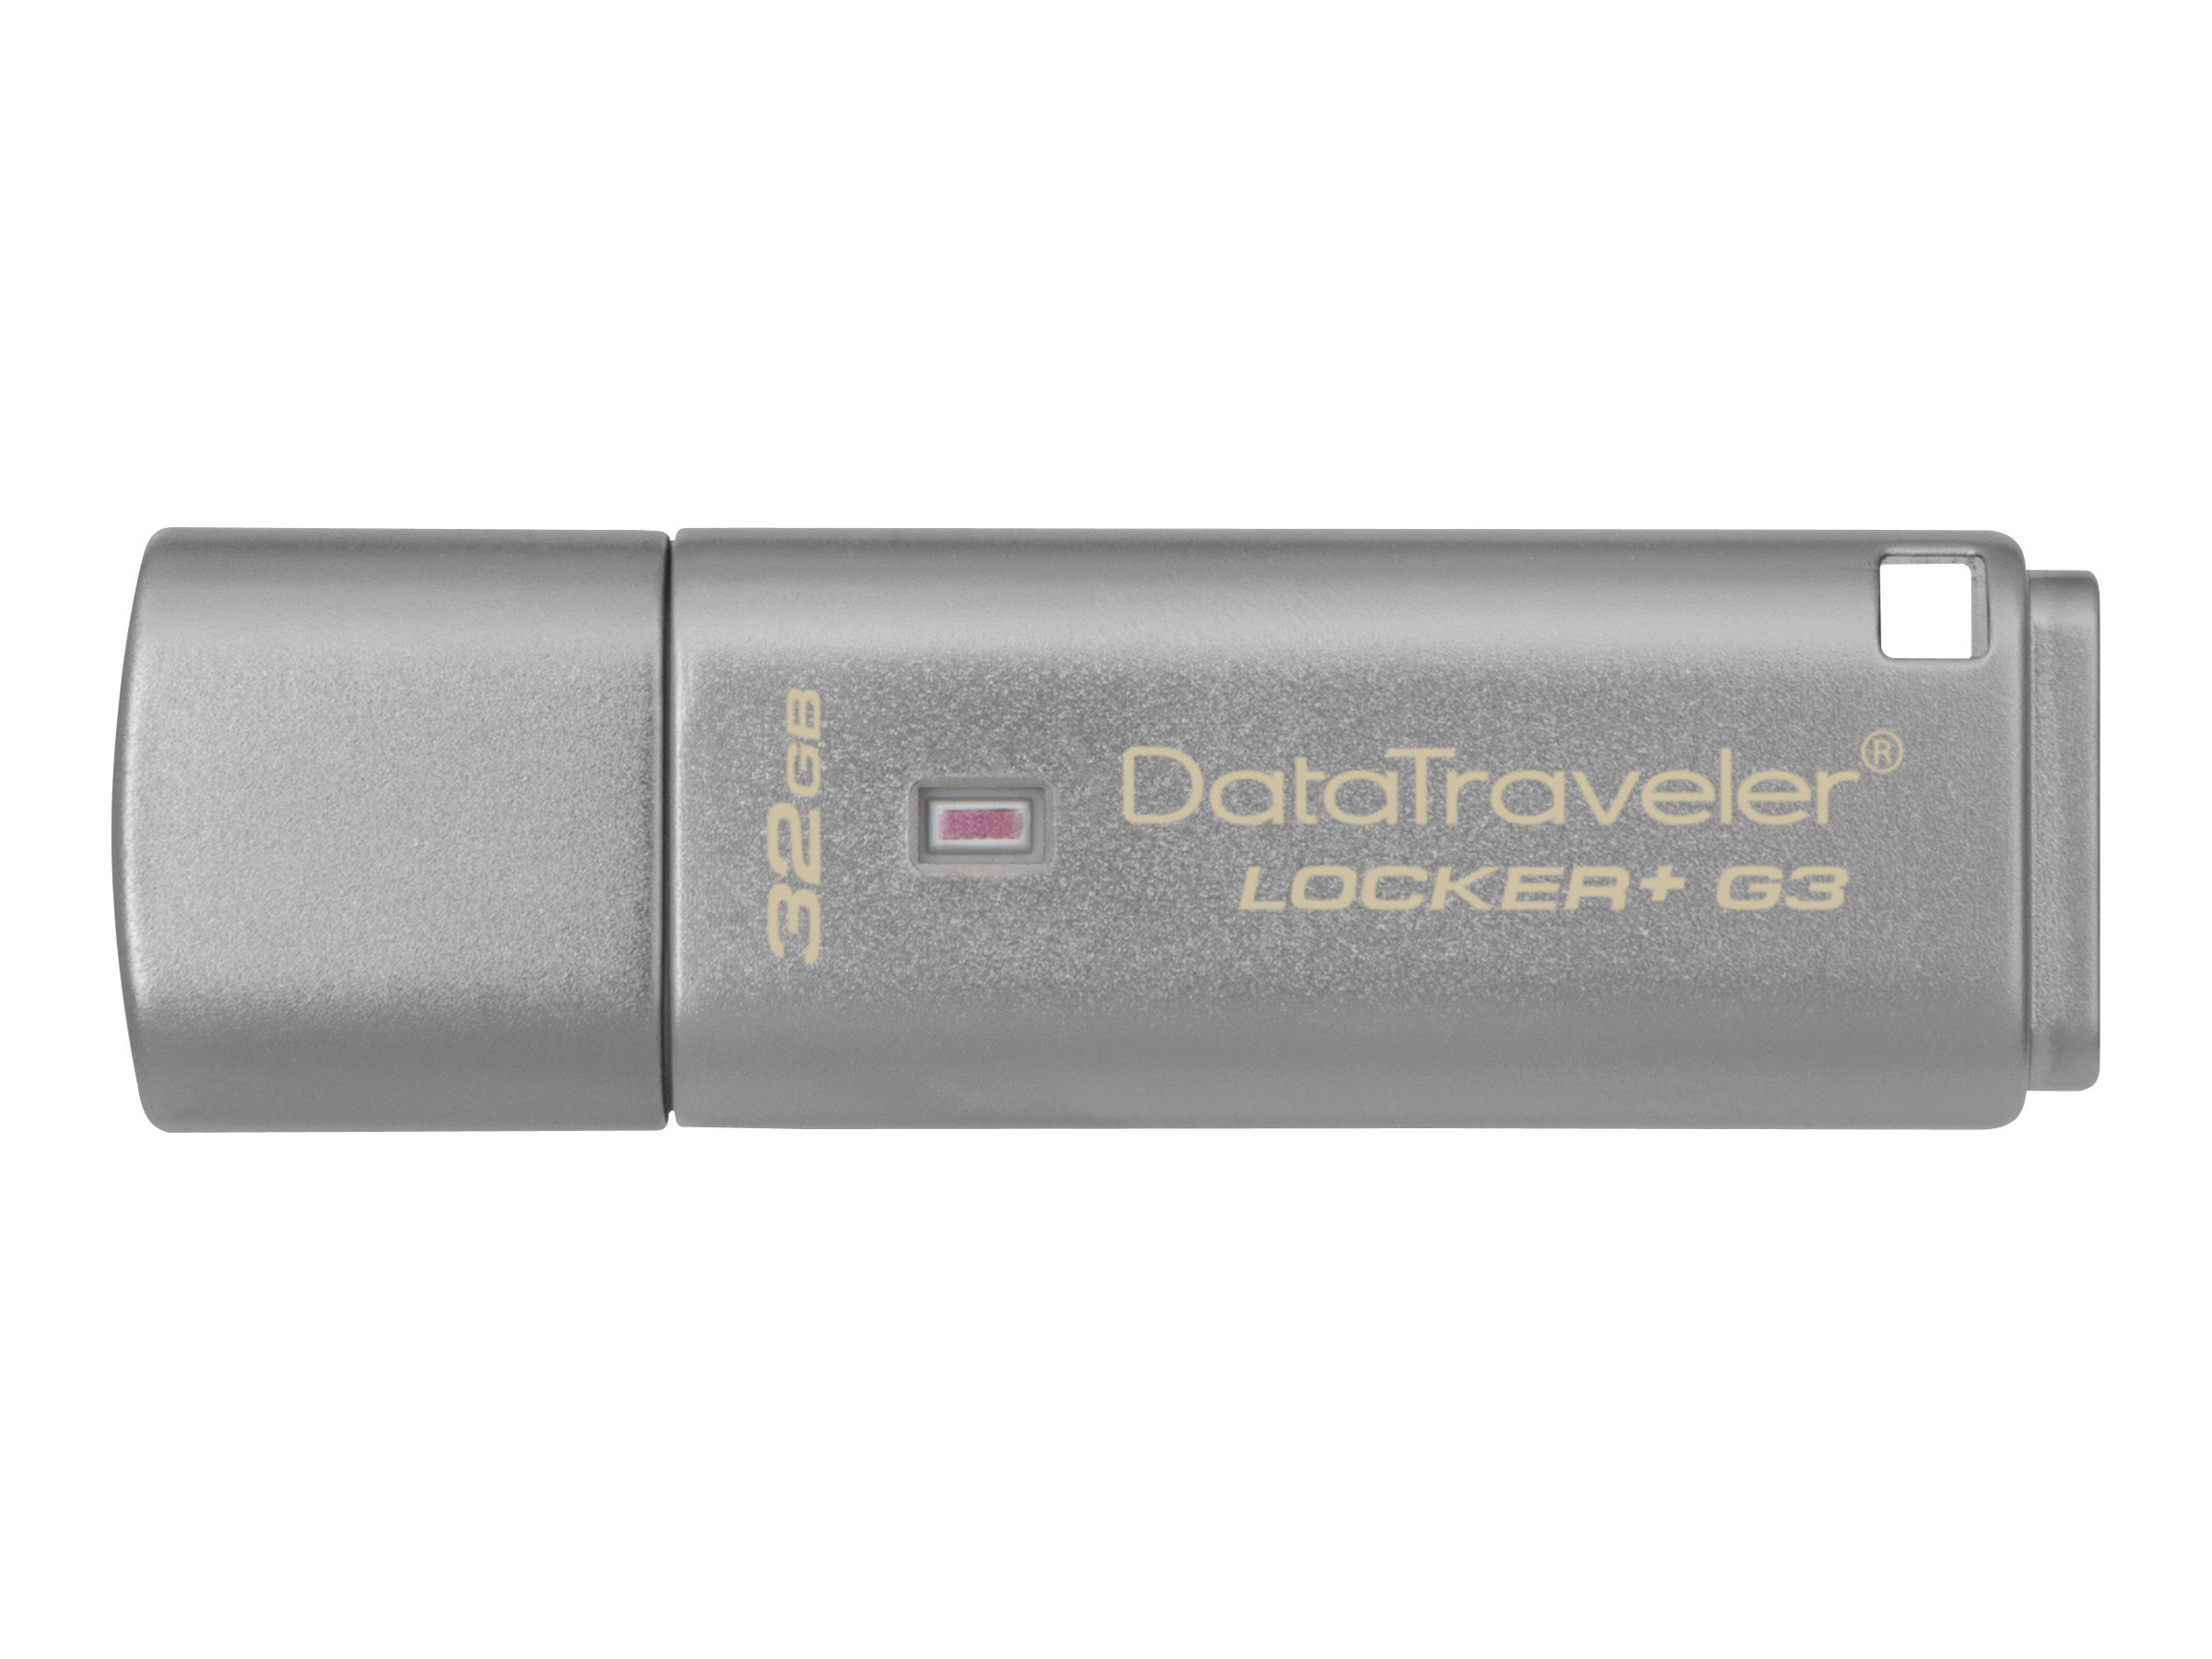 Kingston DataTraveler Locker+ G3